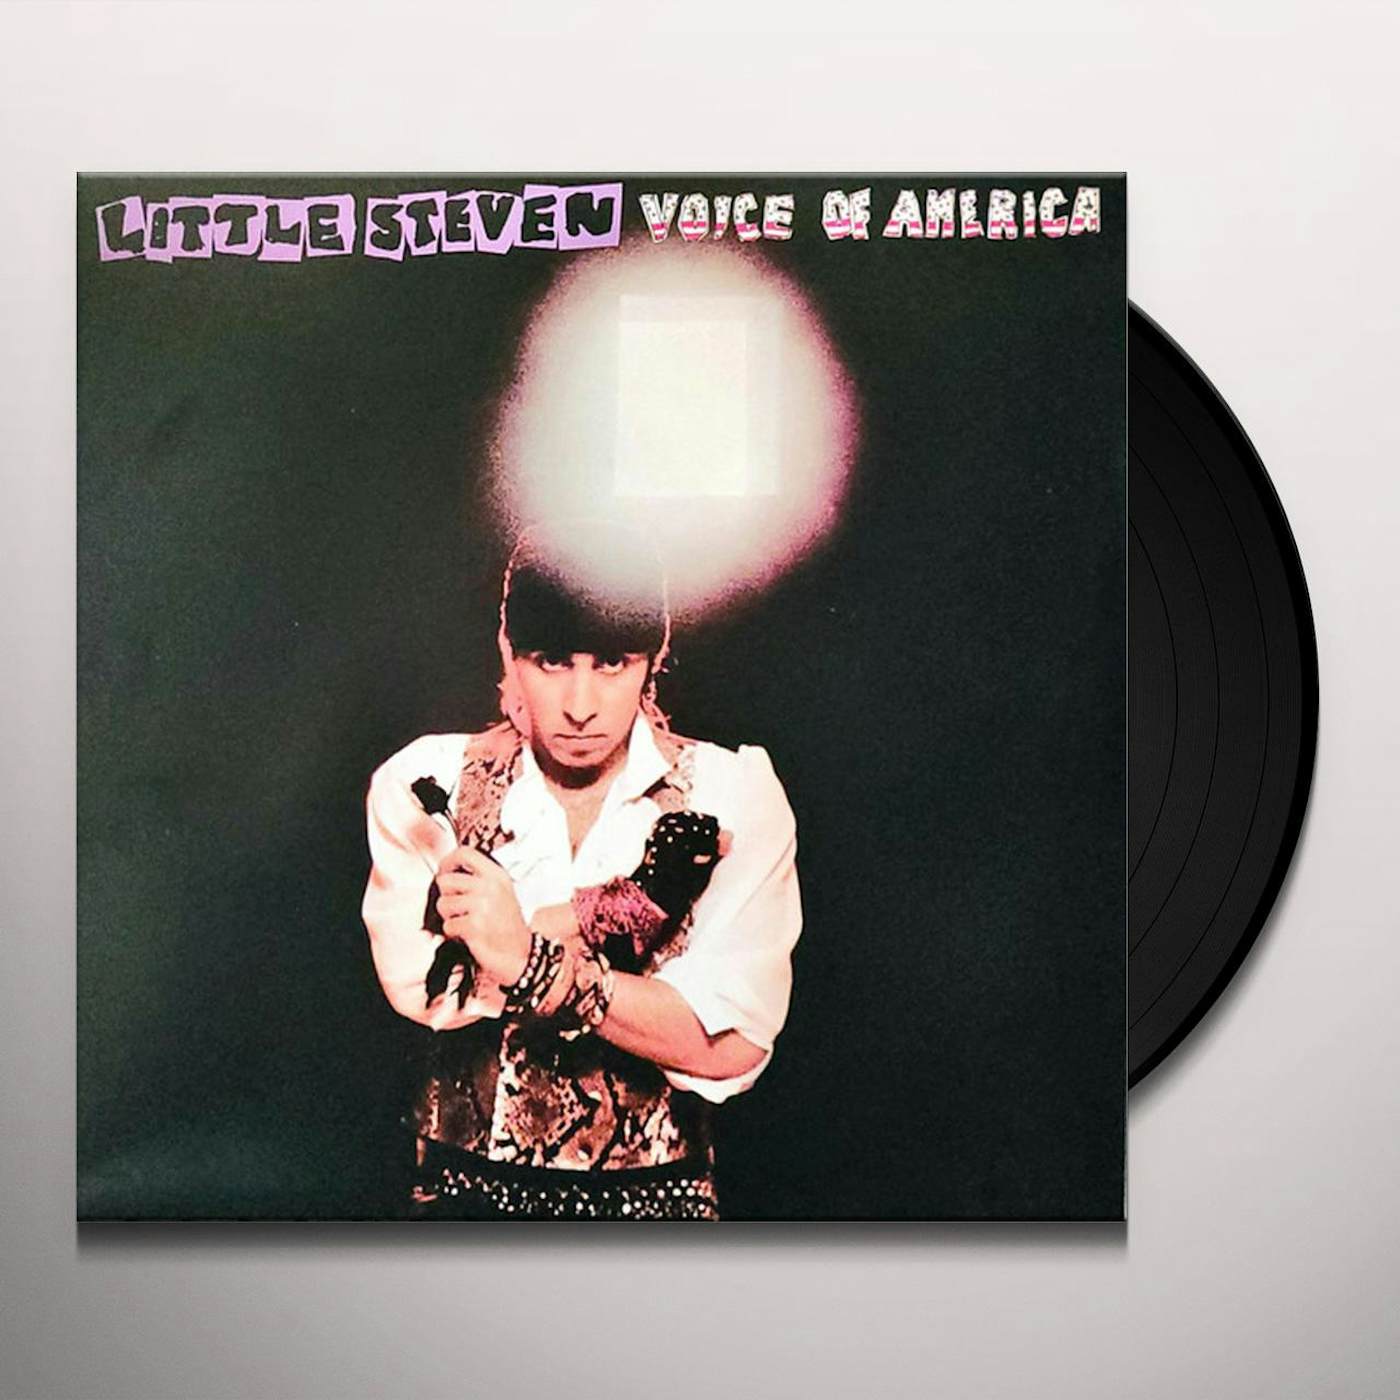 Little Steven Voice Of America Vinyl Record